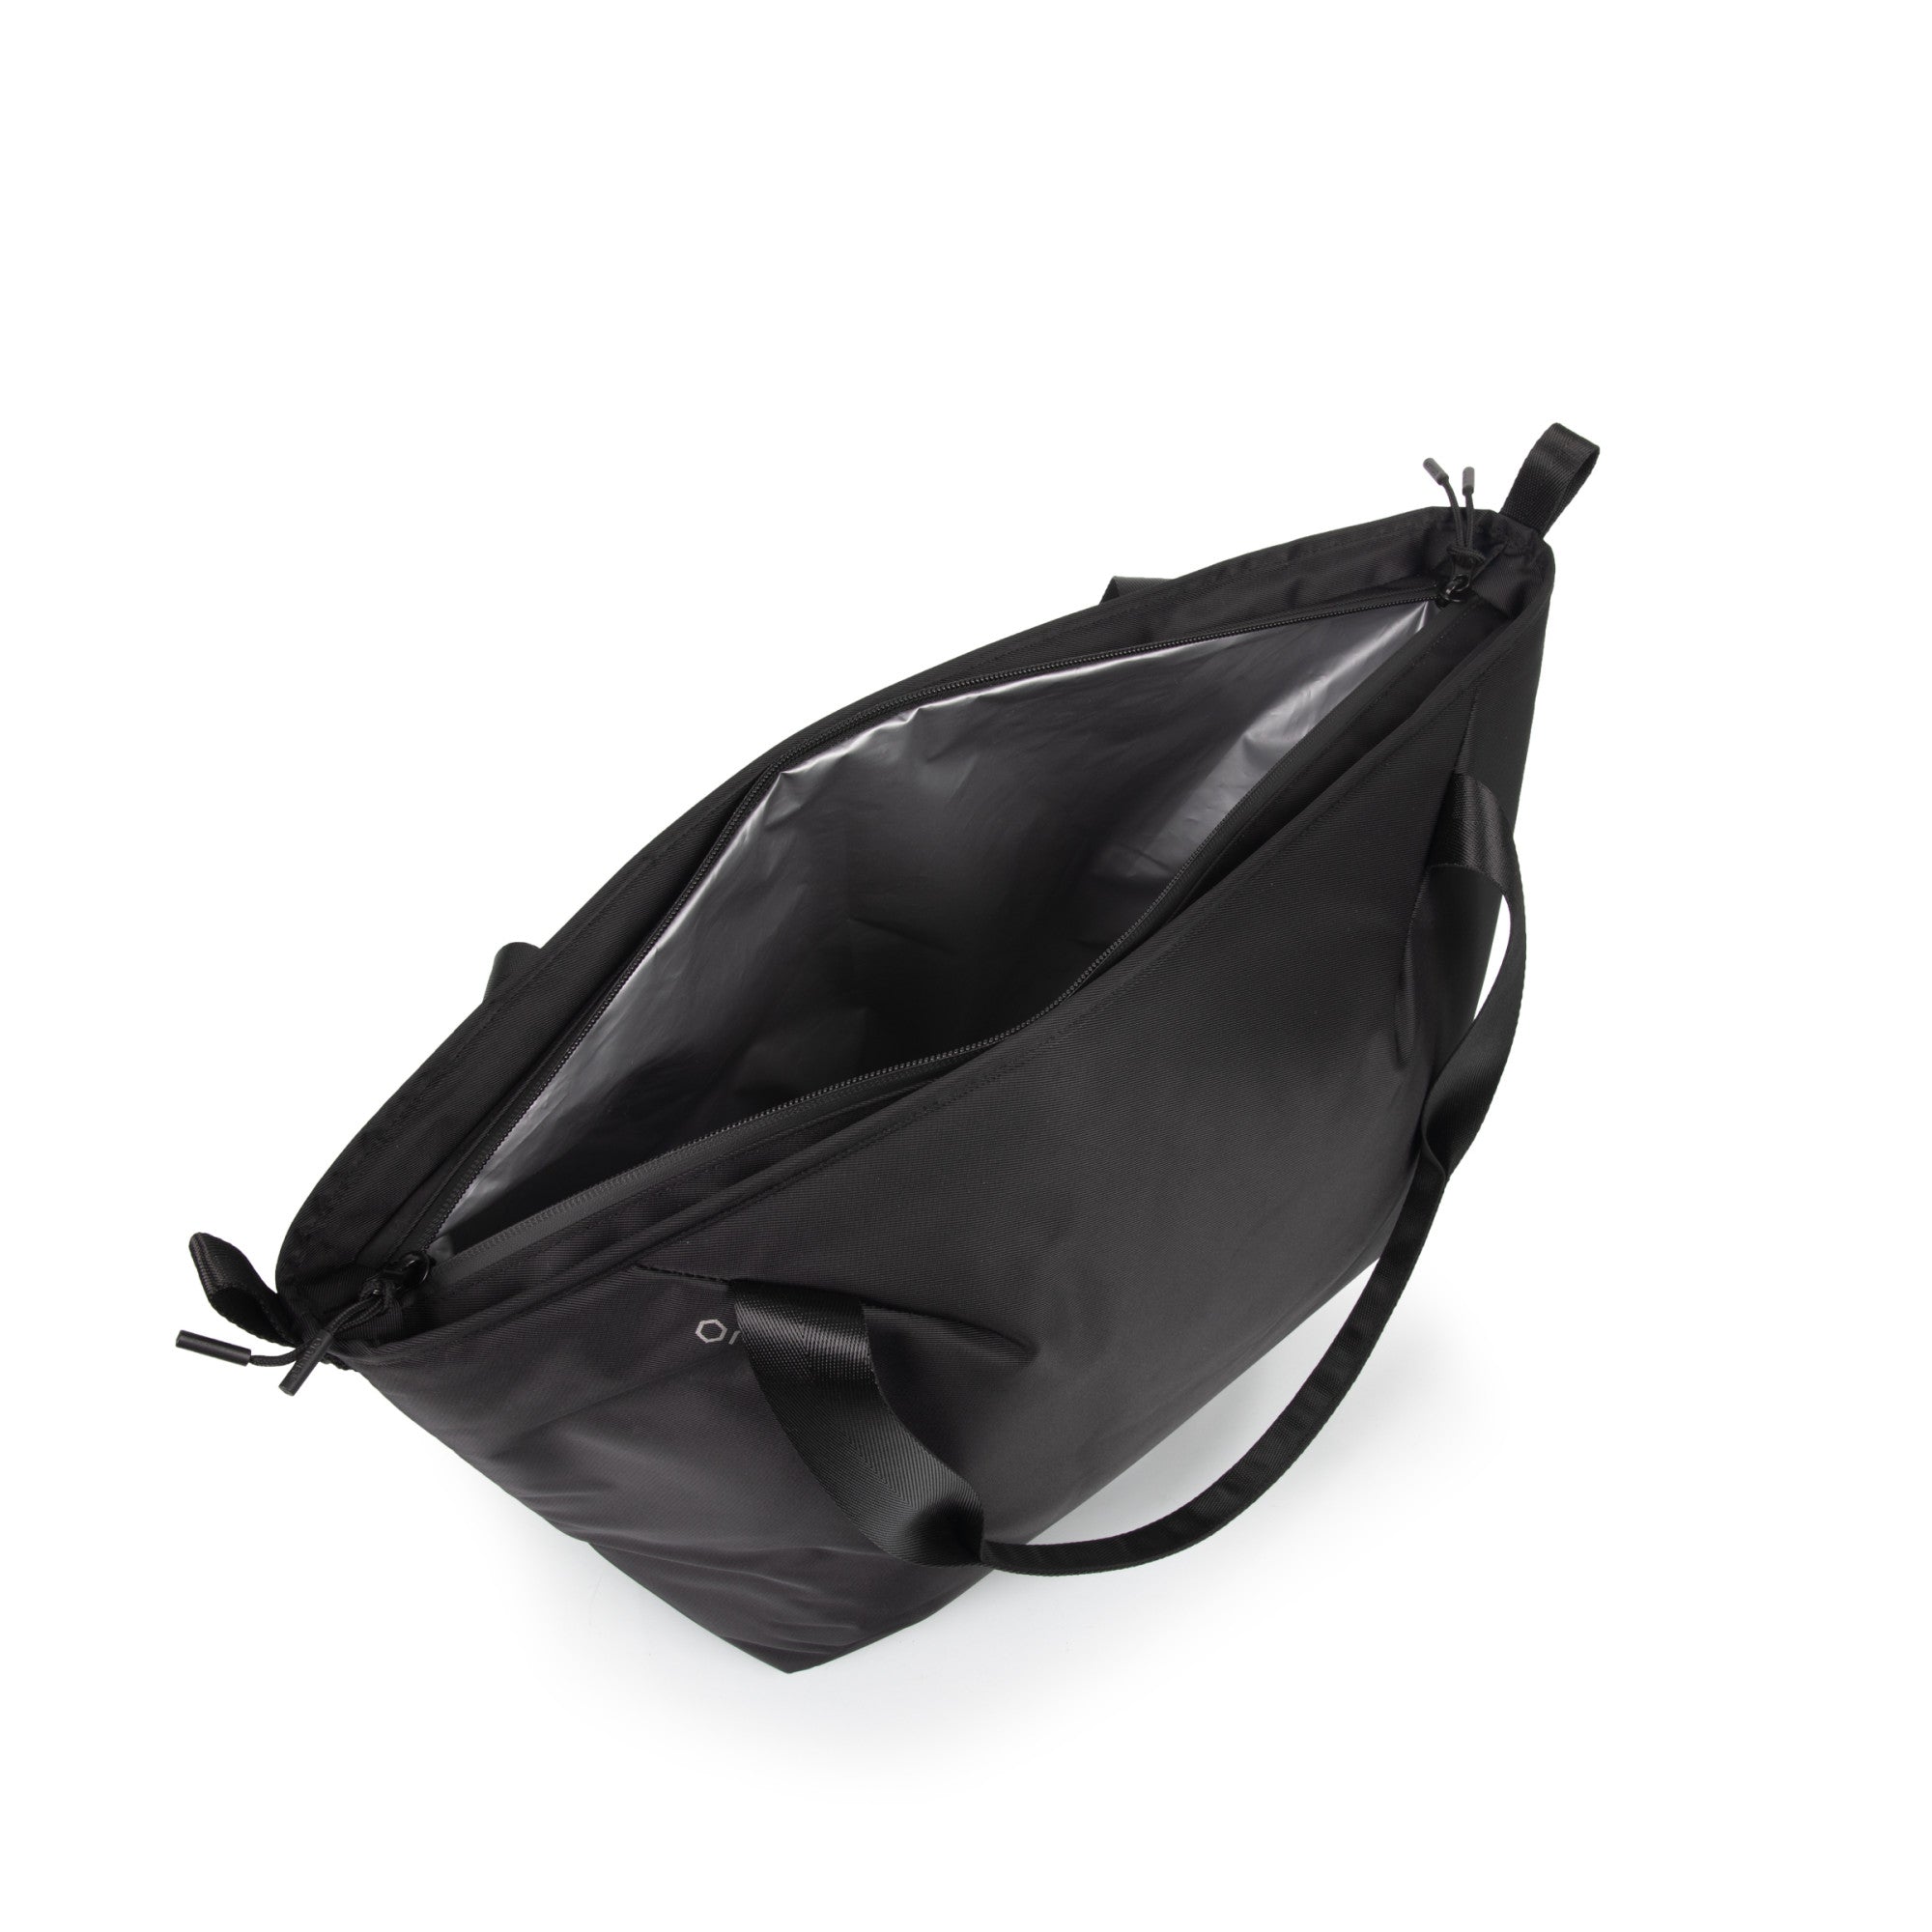 St. Louis Cardinals - Tarana Cooler Tote Bag